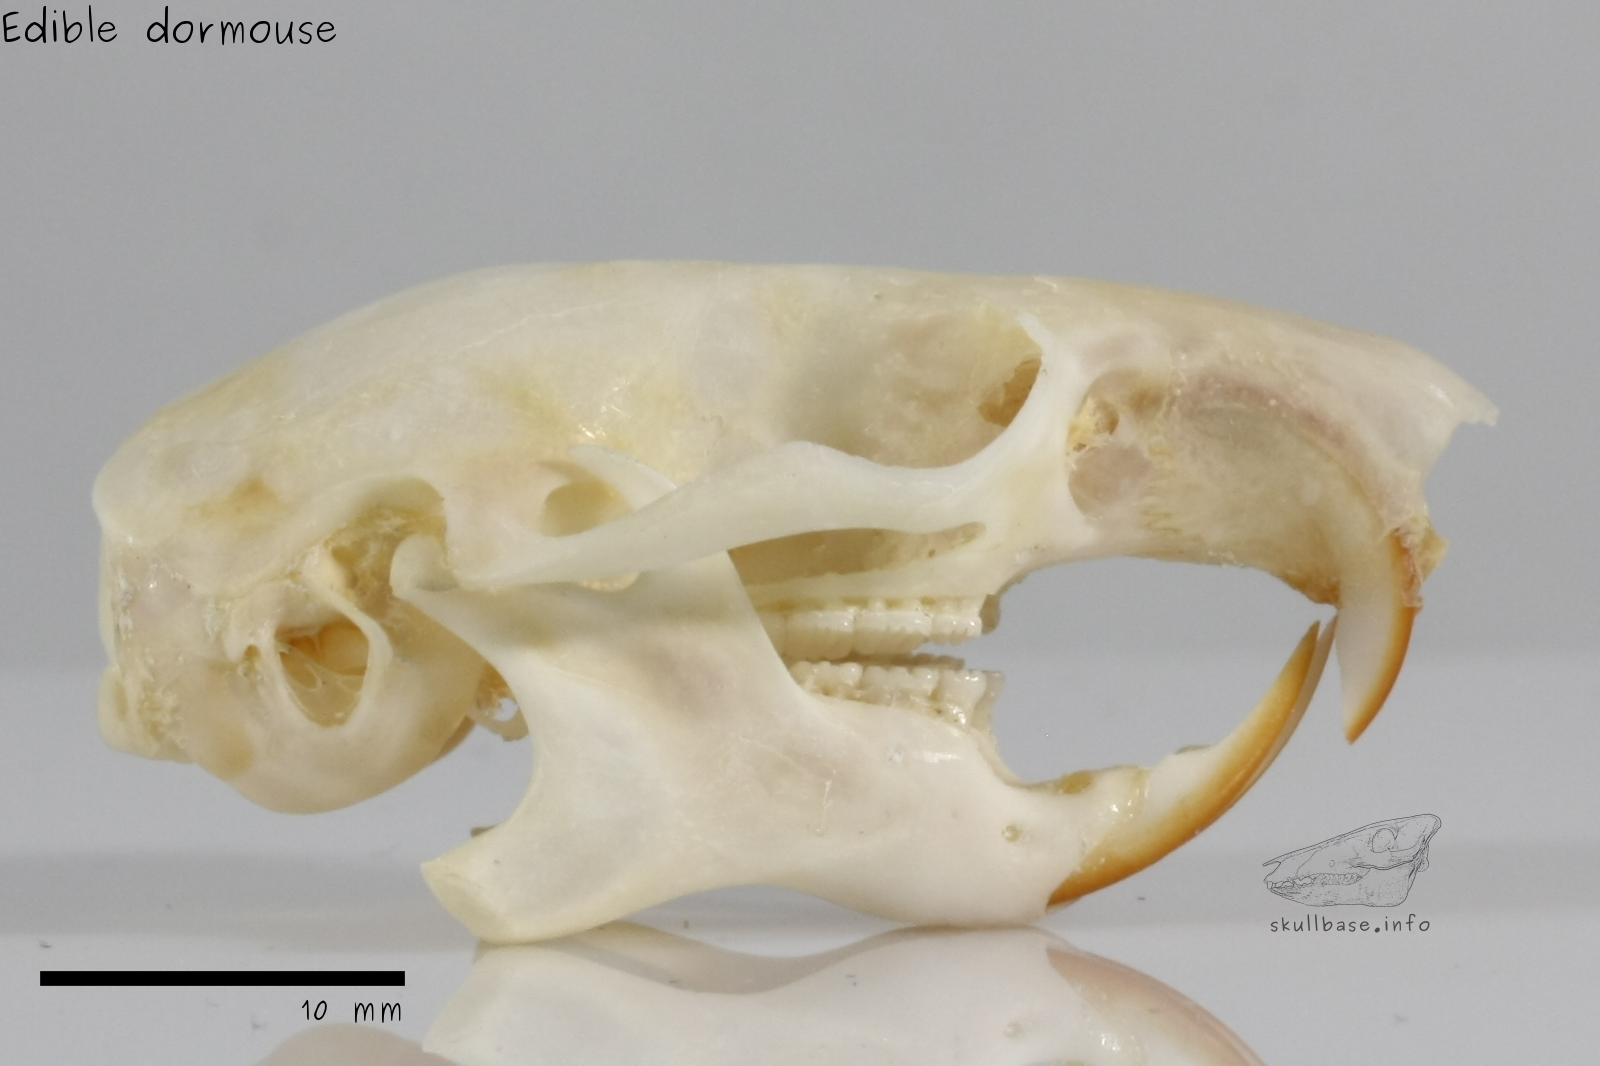 Edible dormouse (Glis glis) skull lateral view